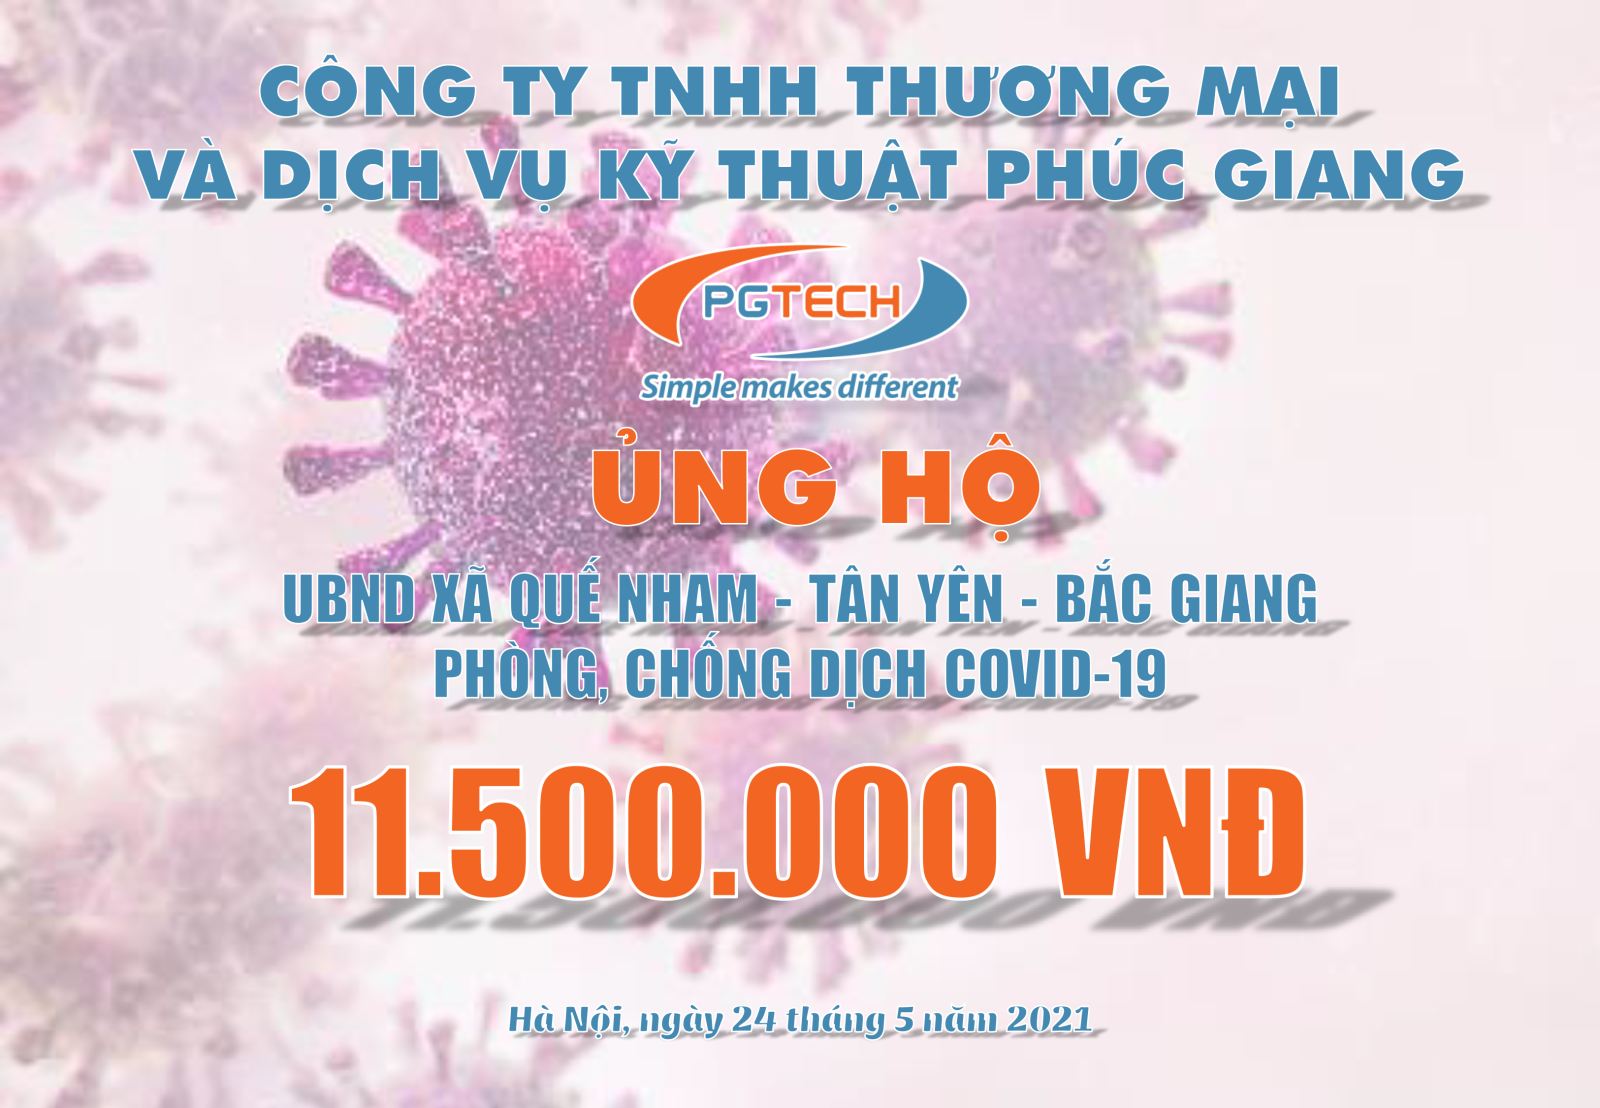 PGTECH ủng hộ quỹ phòng chống Covid-19 trên địa bàn tỉnh Bắc Giang